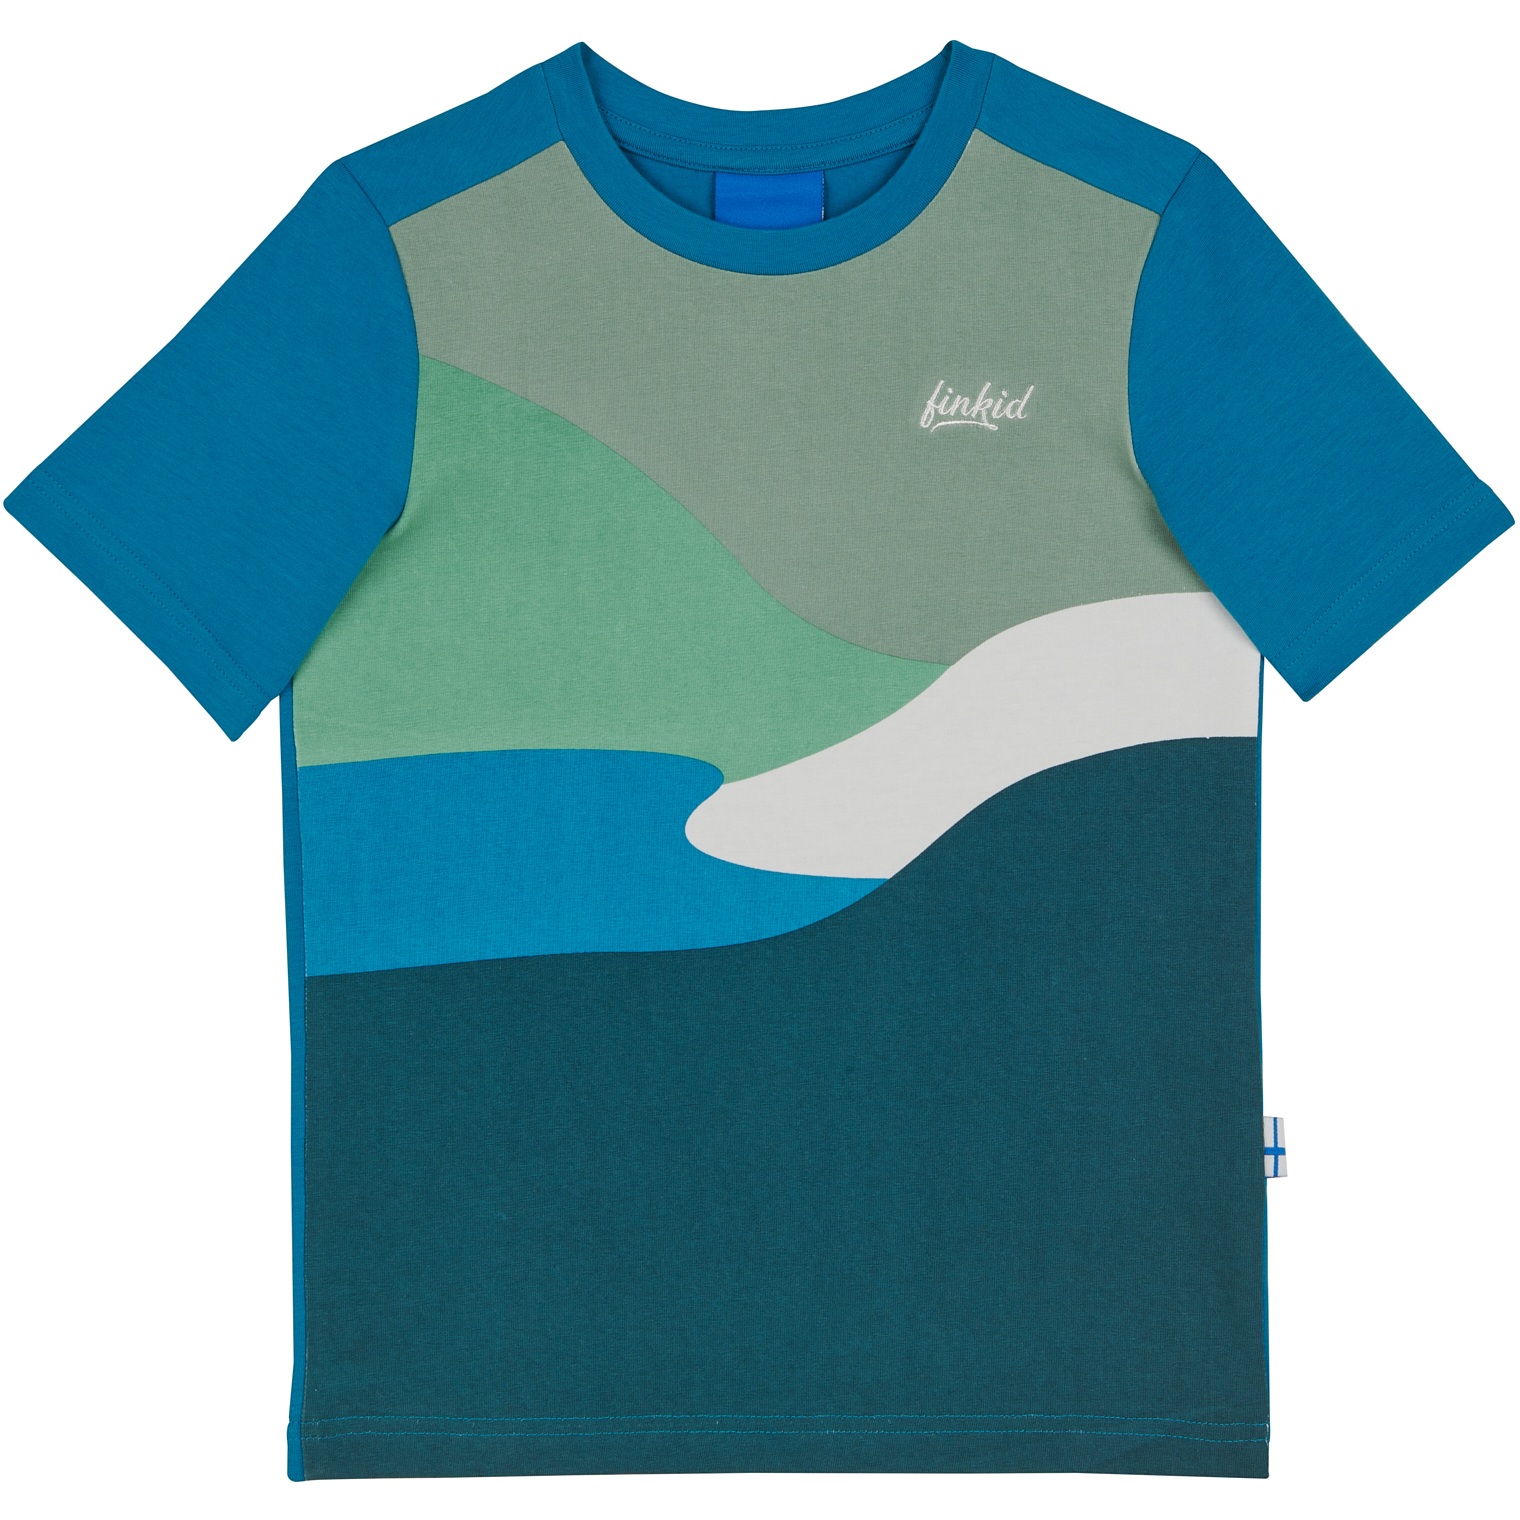 Produktbild von Finkid TANSSI Jersey T-Shirt Kinder - mosaic